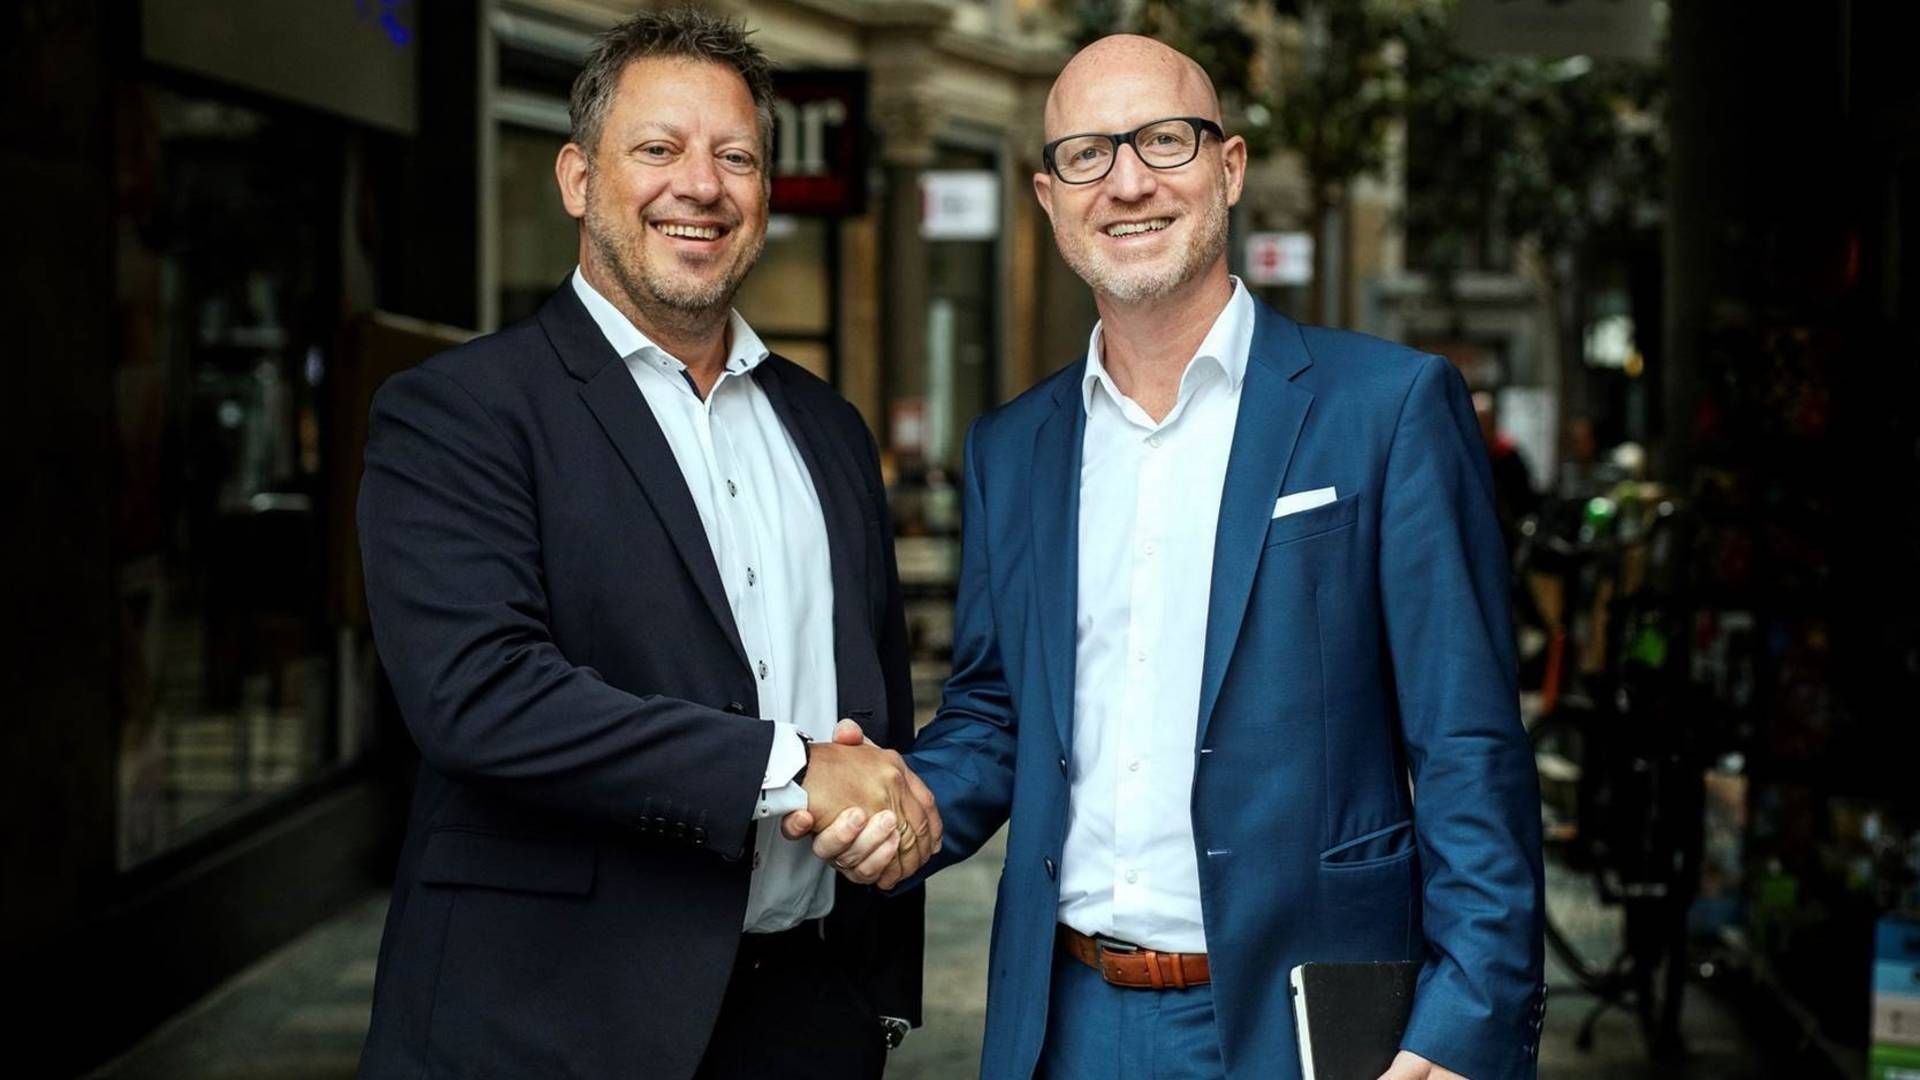 Exometric-direktør Nikolaj Pfeiffer (tv.) og Allan Kehlet Rieck, grundlægger af Truemarketvalue, vil samarbejde om ejendomsdata. | Foto: Exometric PR